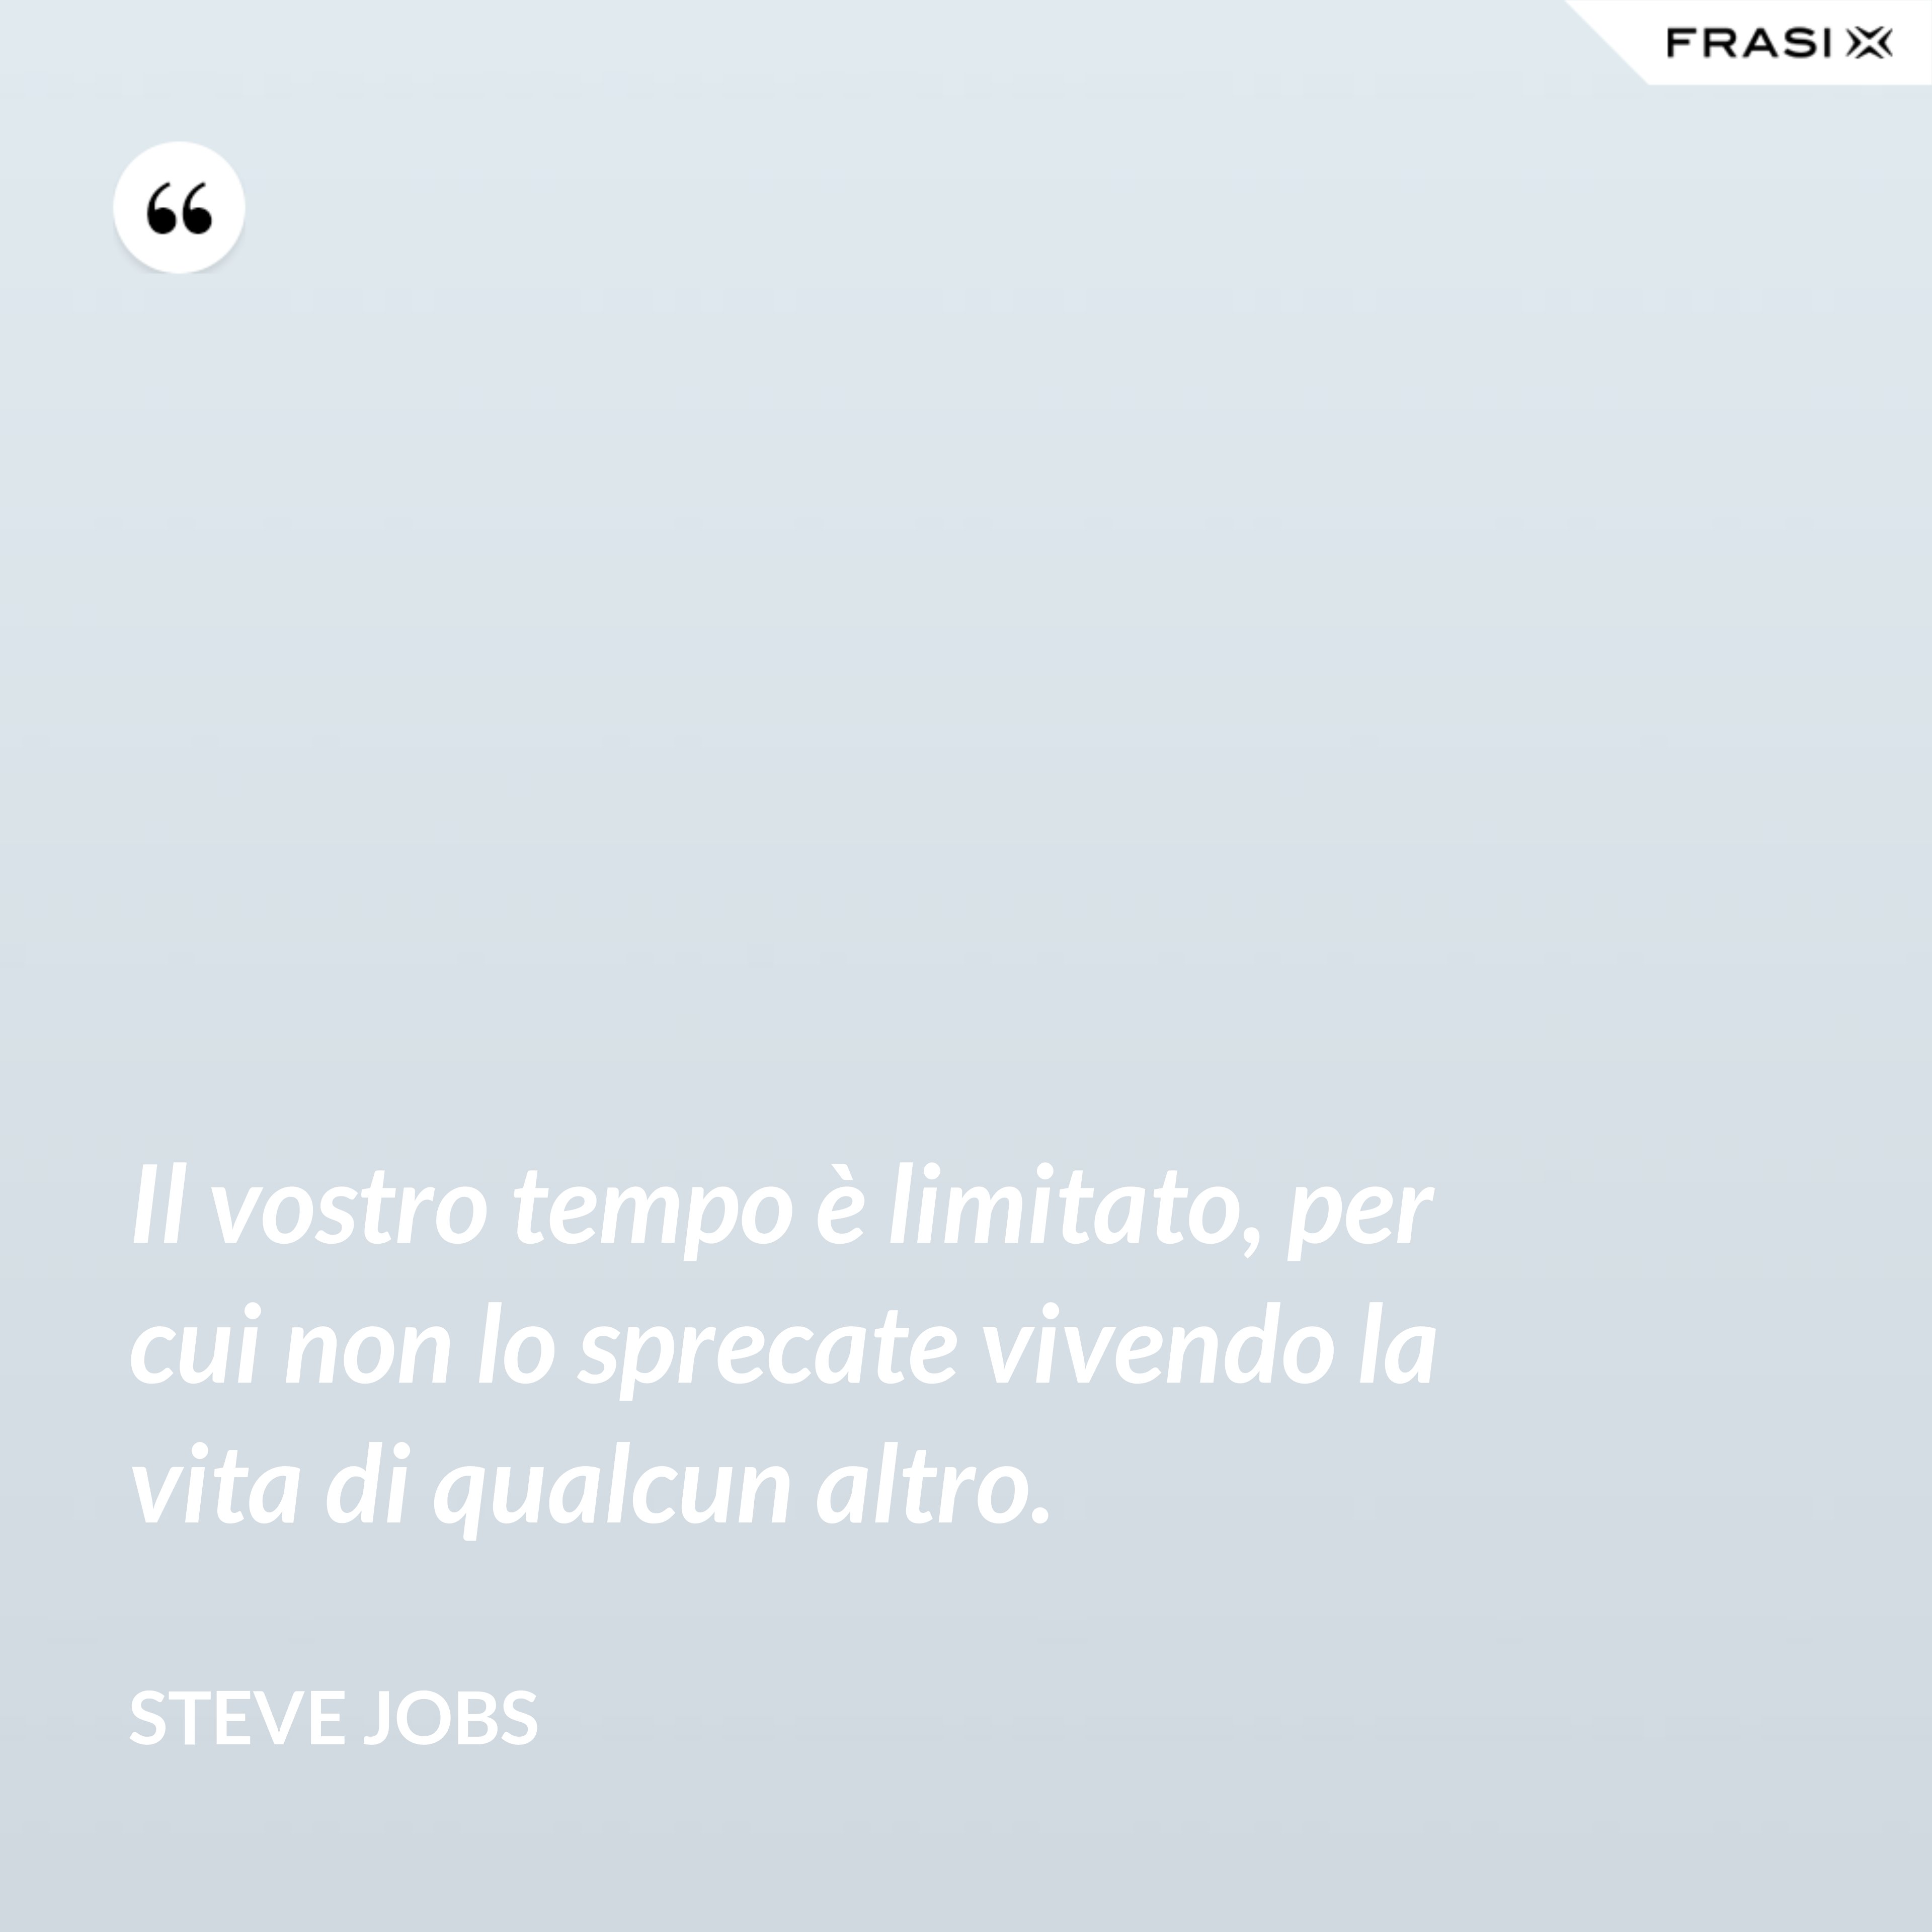 Il vostro tempo è limitato, per cui non lo sprecate vivendo la vita di qualcun altro. - Steve Jobs